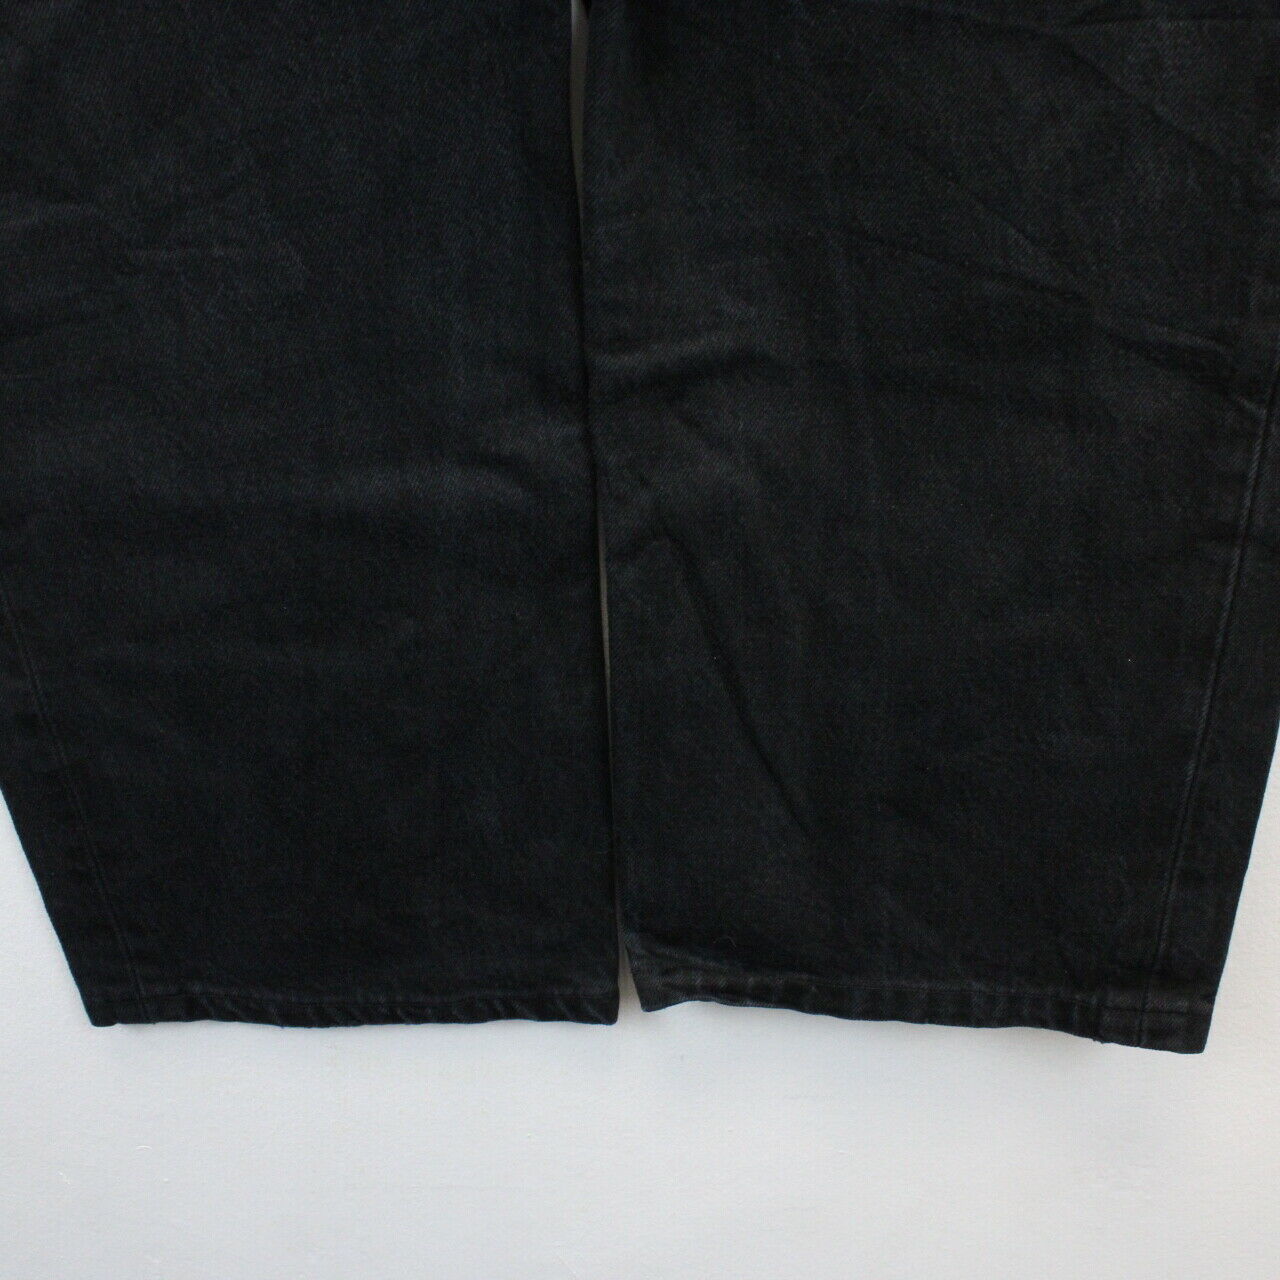 LEVIS 501 Jeans Black | W36 L30